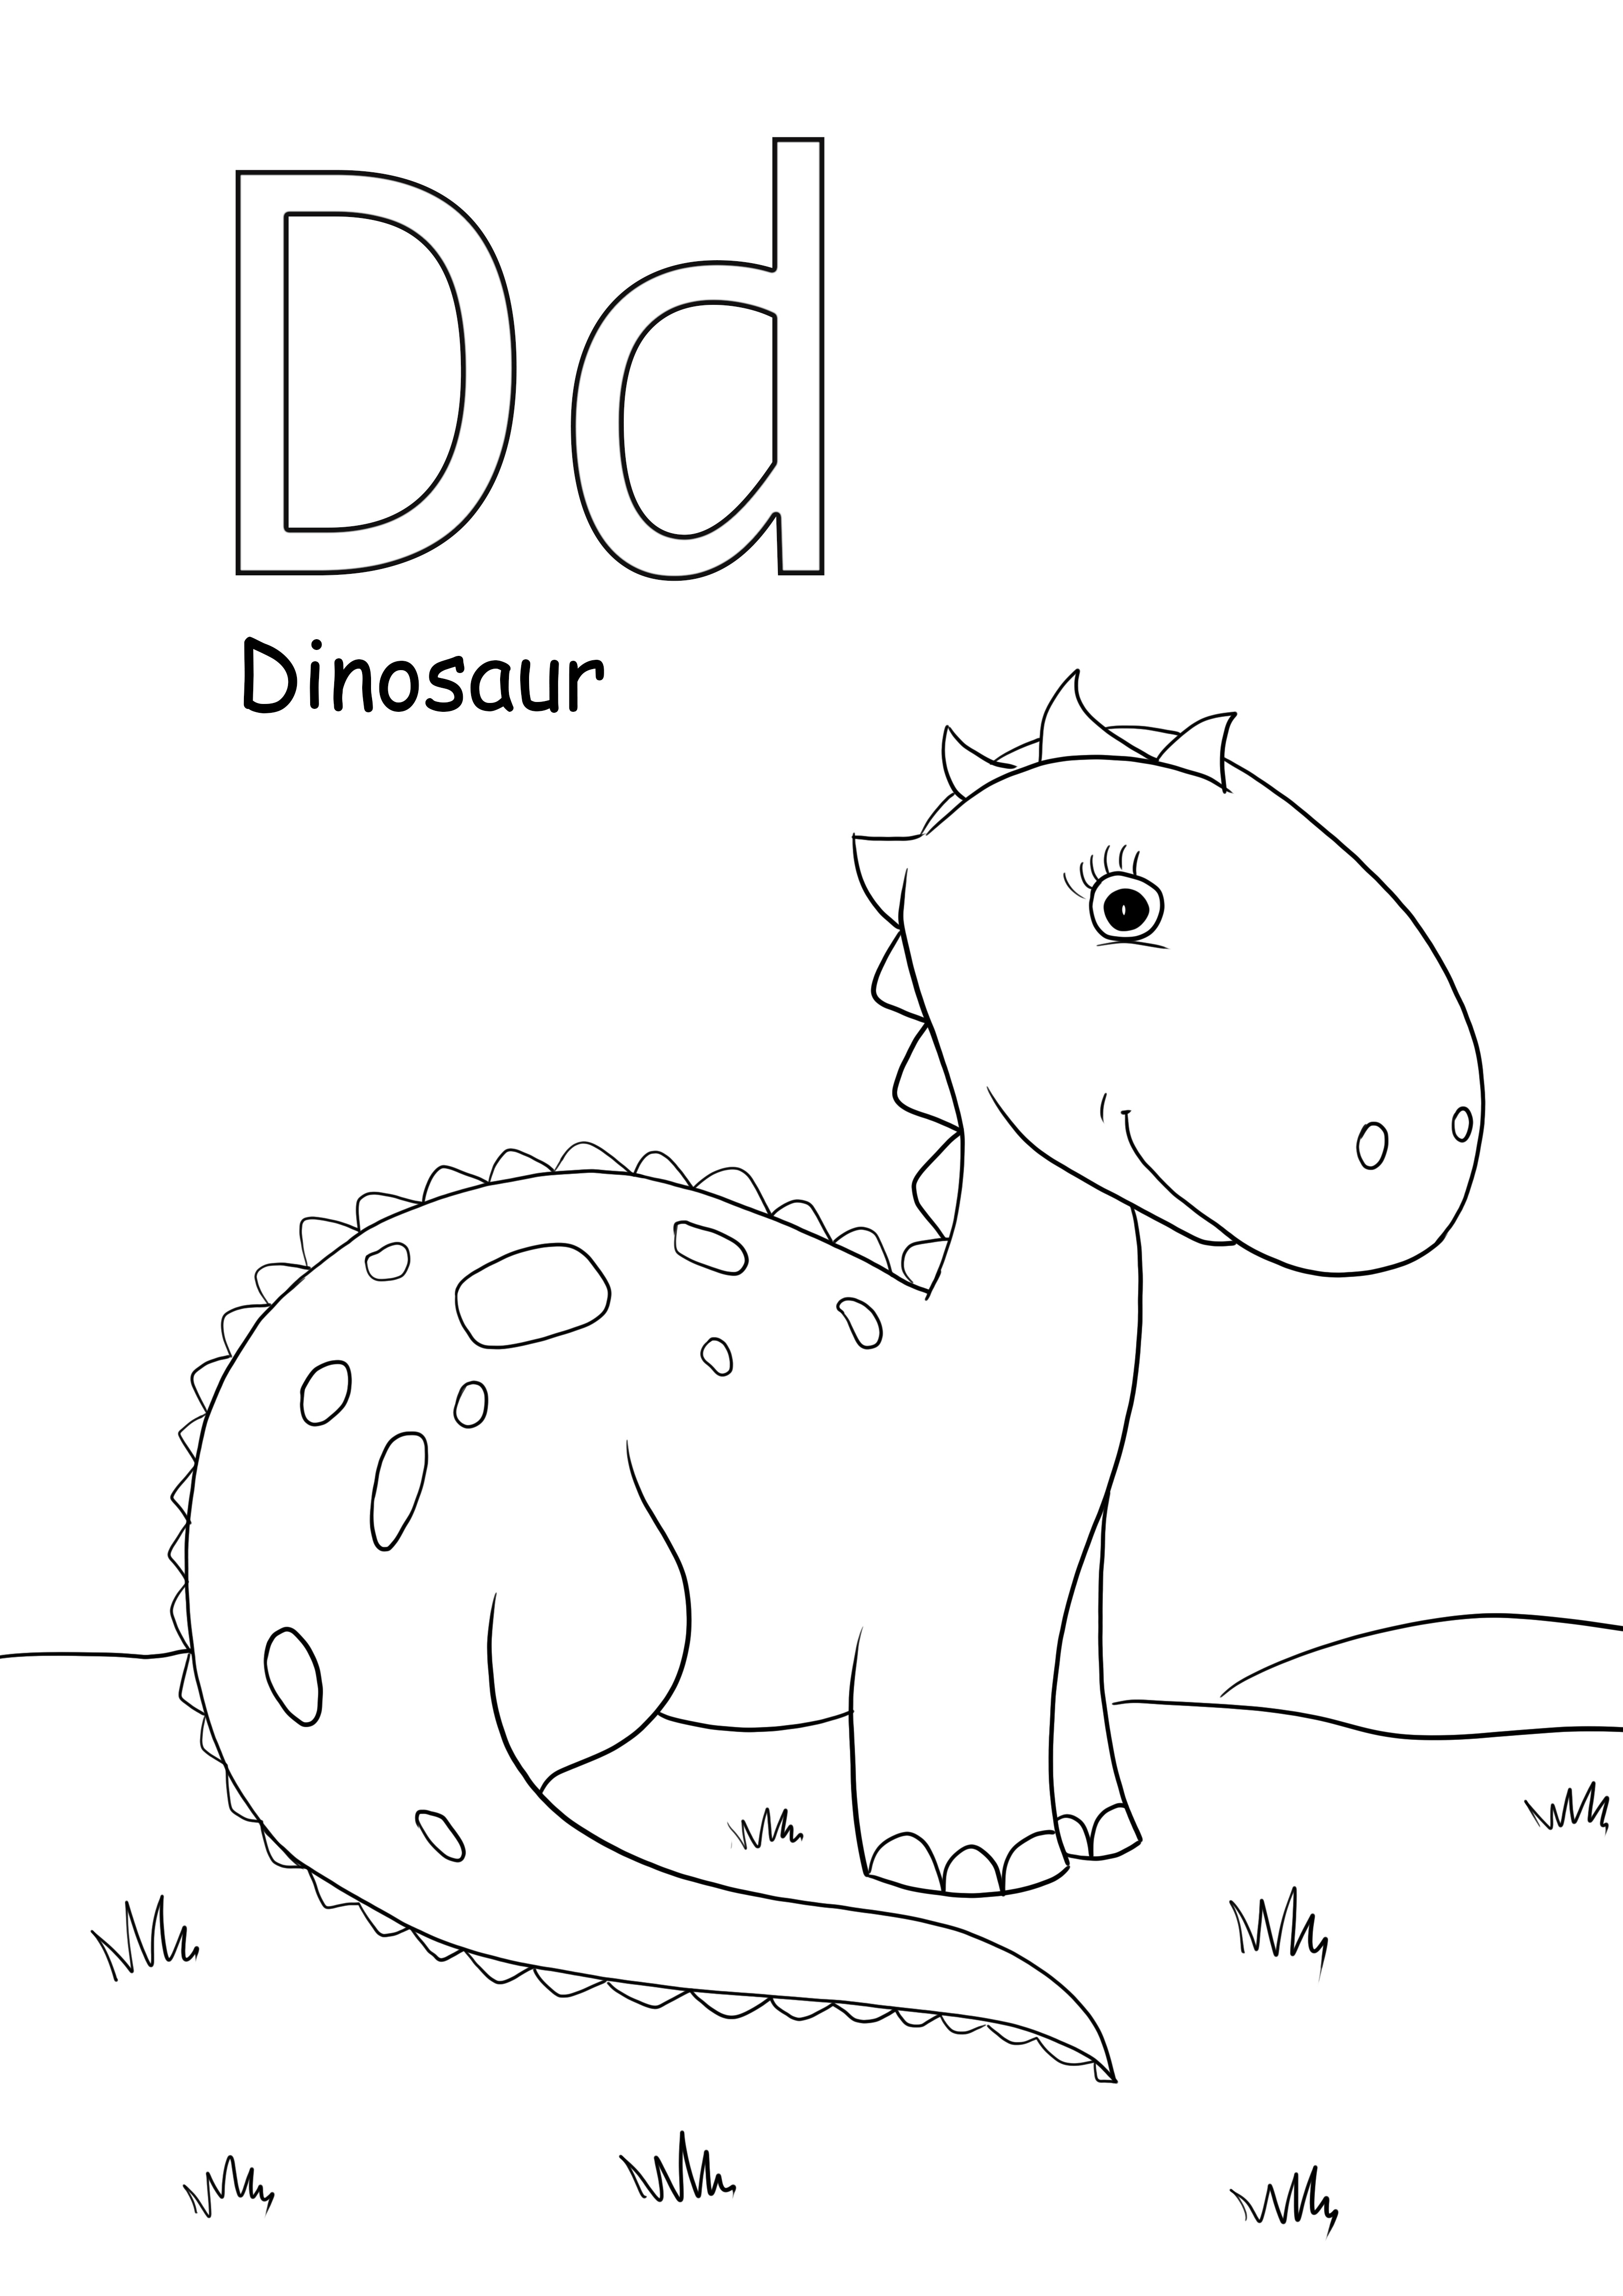 d es para colorear imágenes de dinosaurios y es gratis para imprimir